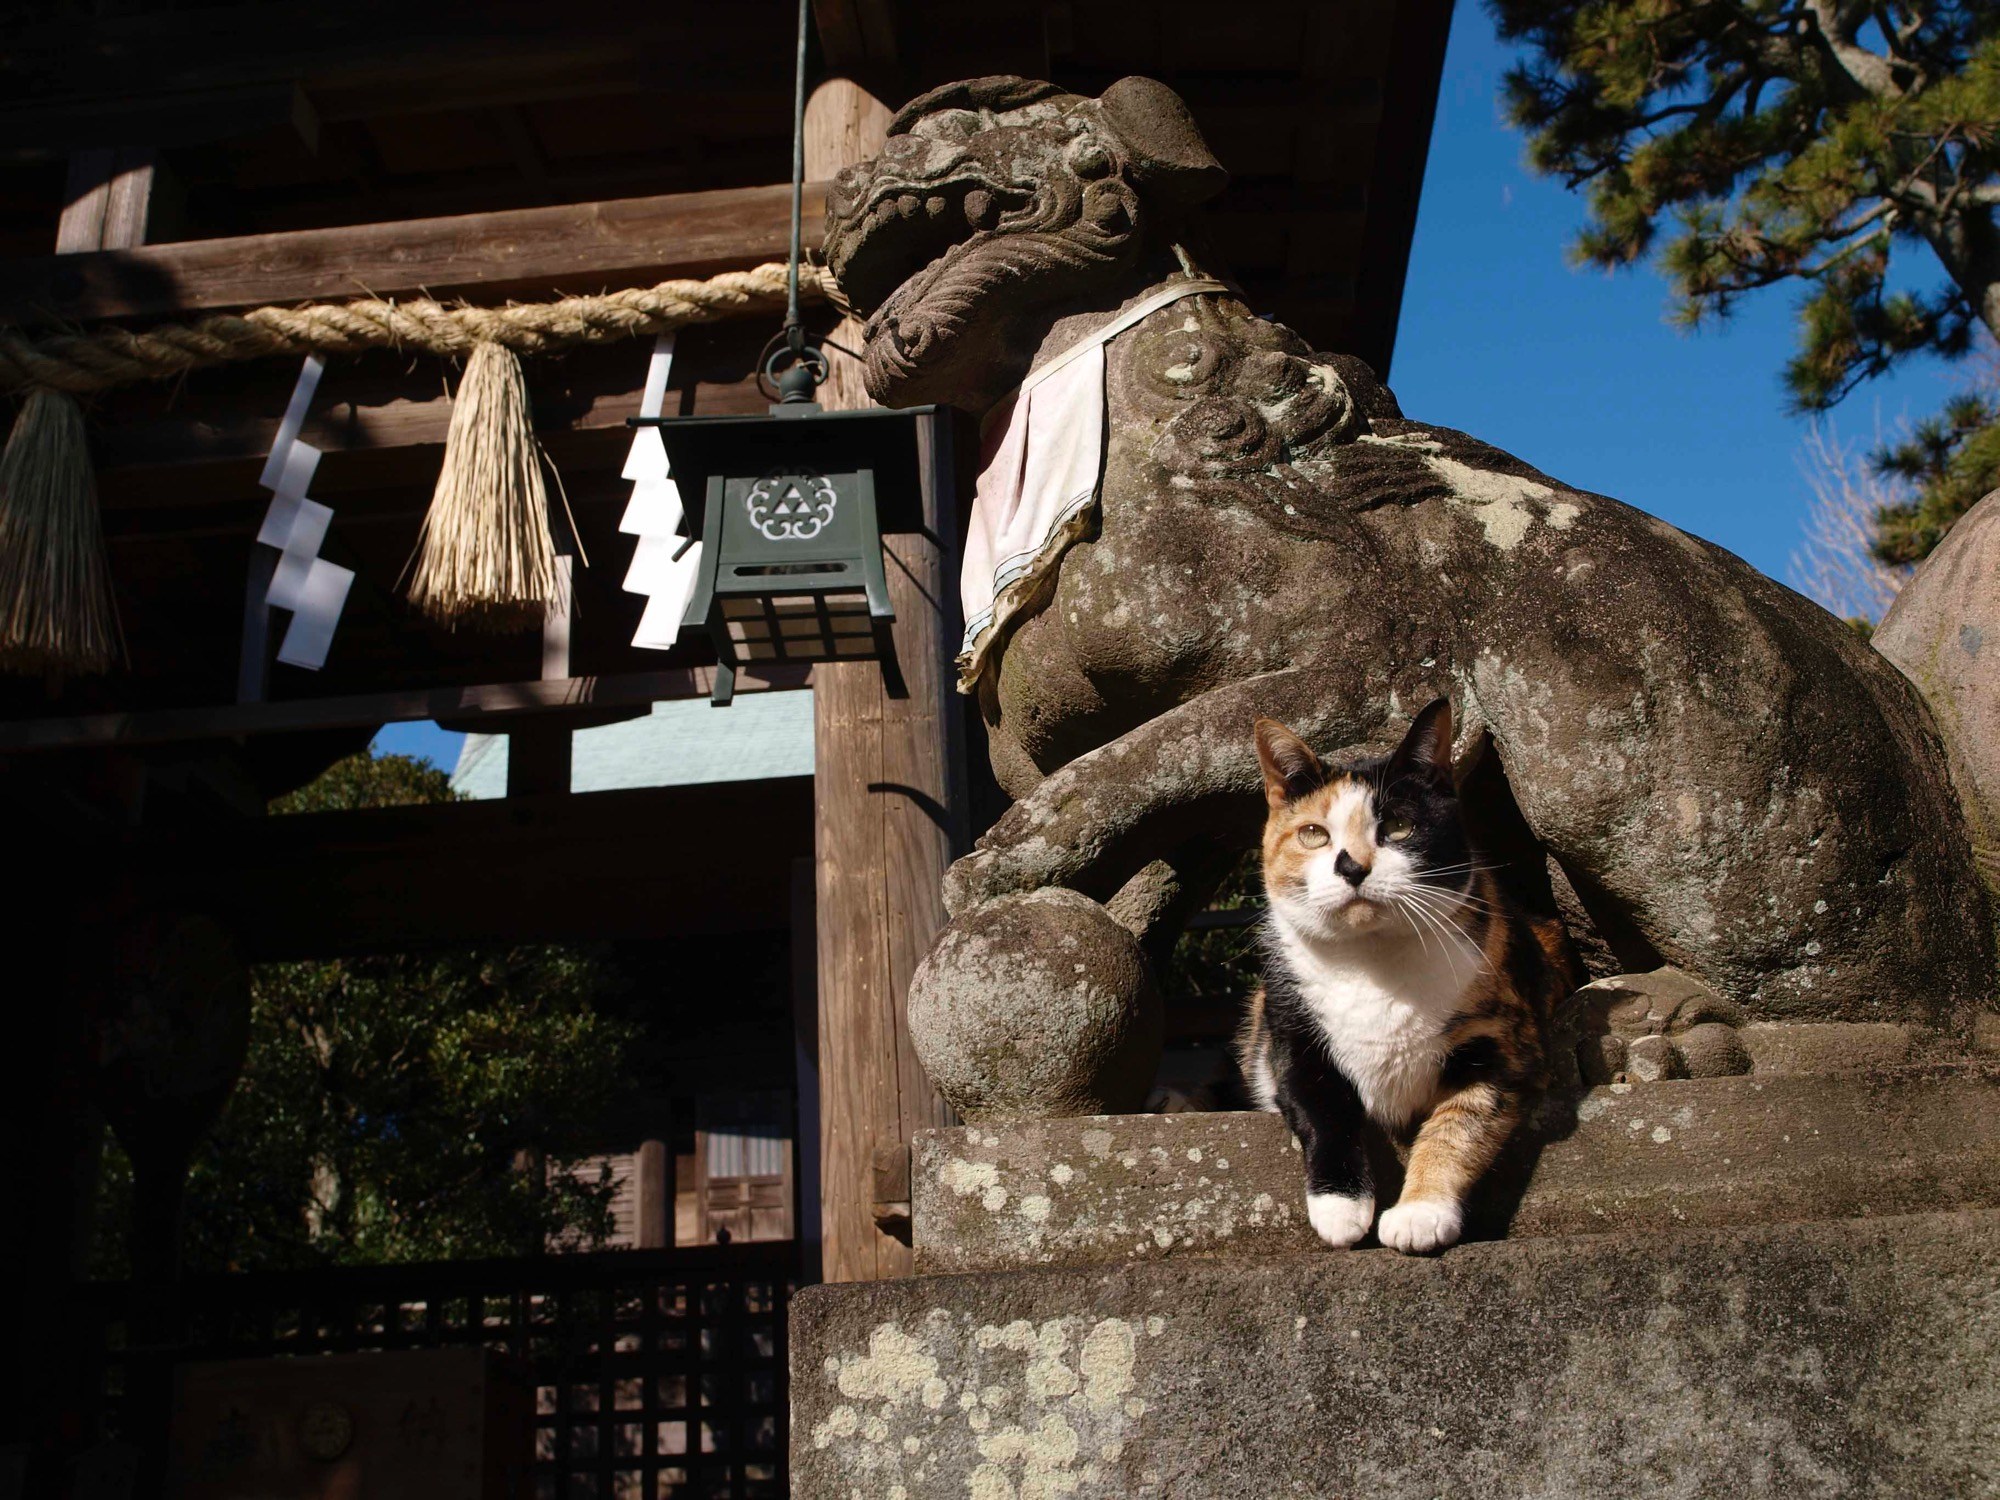 来年も福を招くよ猫カレンダー、岩合さんの猫写真で